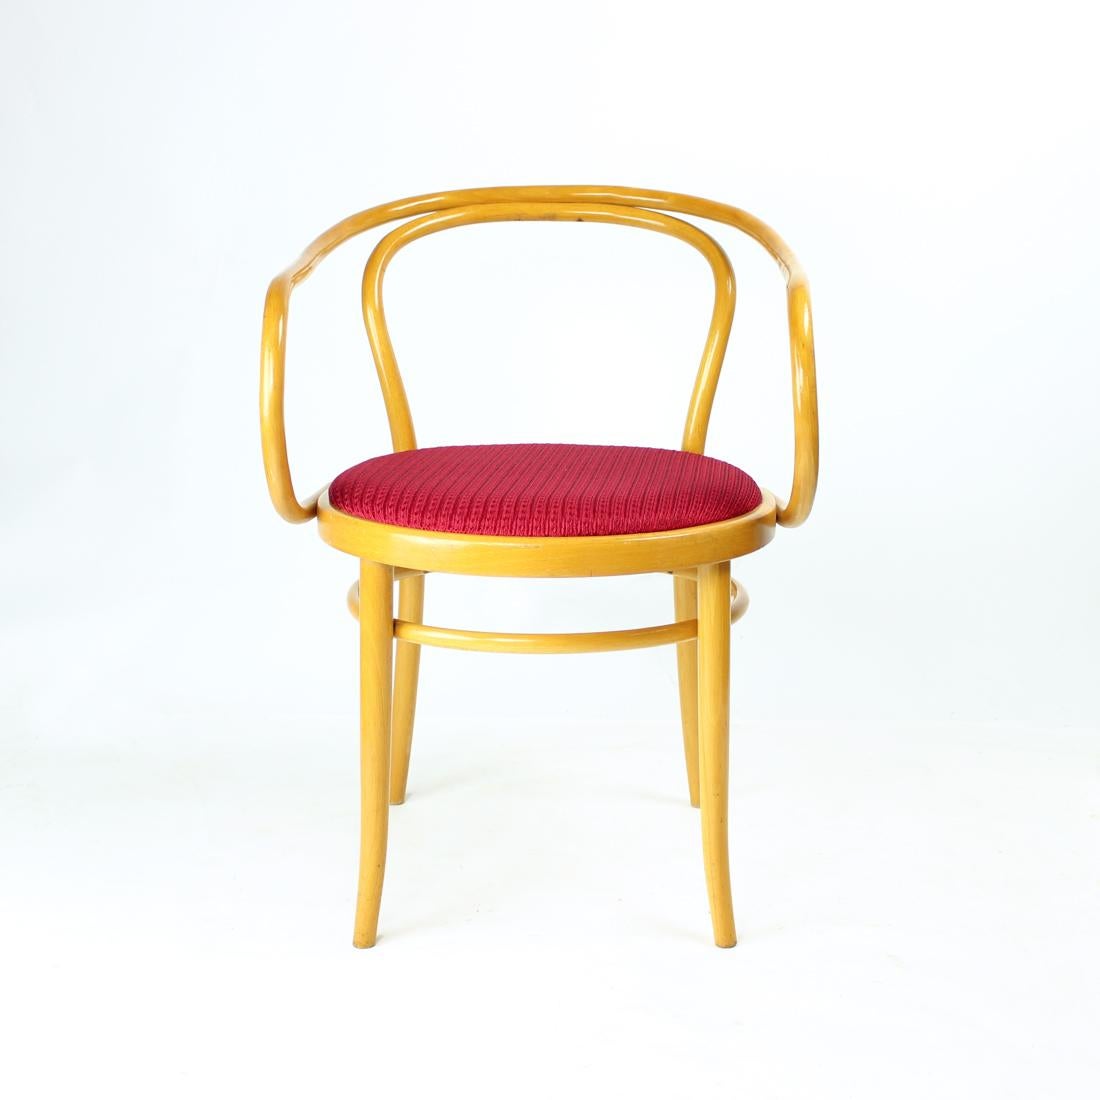 Ikonische Bugholz-Esszimmerstühle Typ 30 von TON, Originalentwurf von Thonet. Hergestellt 1963, Originaletikett noch vorhanden. Die Stühle sind einzigartig in ihren Bugholzlinien und ihrem eleganten Design. Originalzustand in blondem Eichenholz und